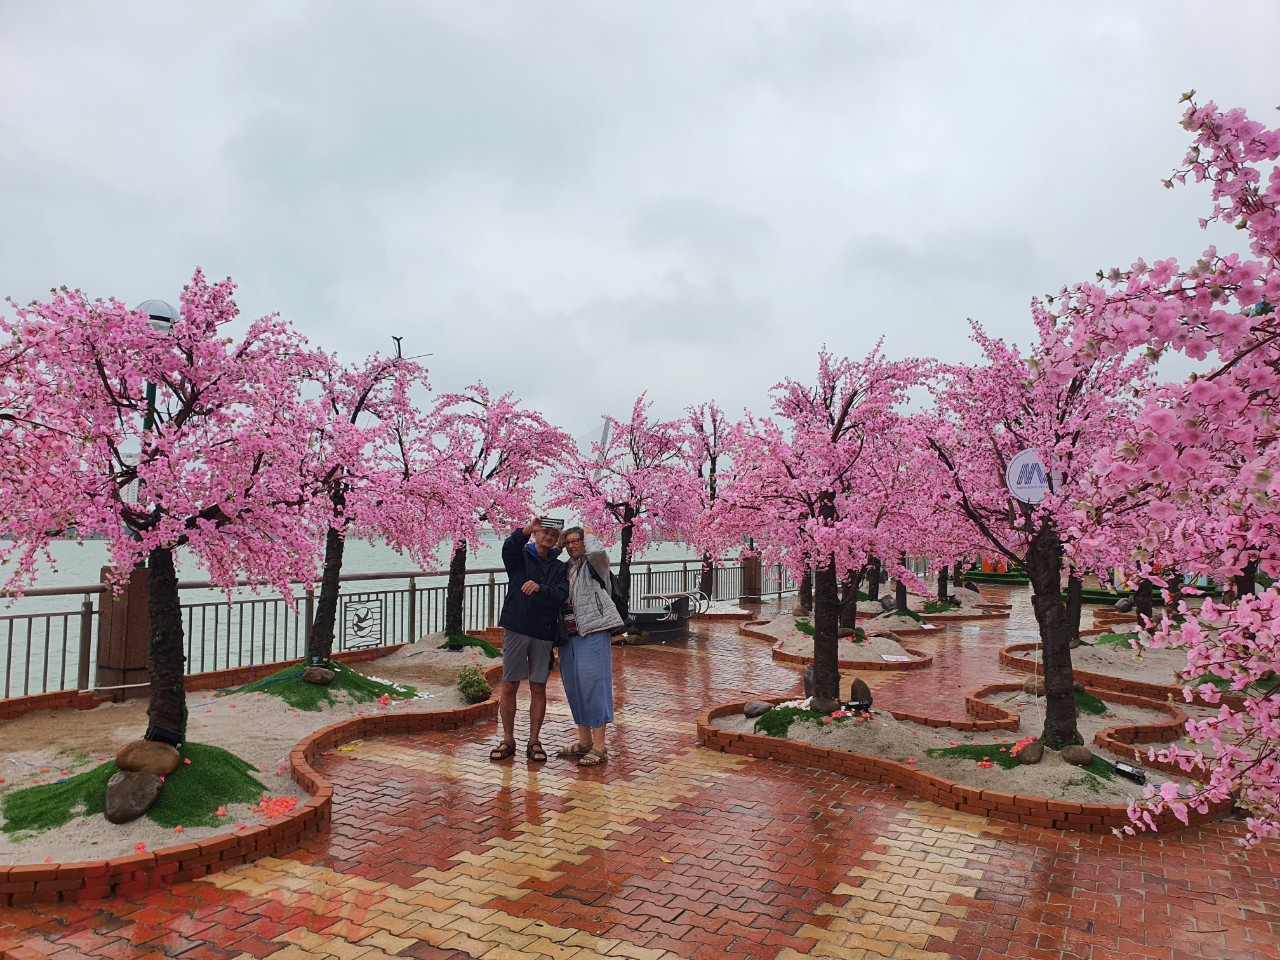 Với mong muốn lần đầu tiên mang lại không khí vui Xuân đặc biệt hơn cho người dân và du khách, từ nhiều tháng qua, Hội mỹ thuật thành phố đã phối hợp với doanh nghiệp, xây dựng đường hoa xuân độc đáo có chủ đề “Xưa và Nay” gần khu vực công viên APEC. 